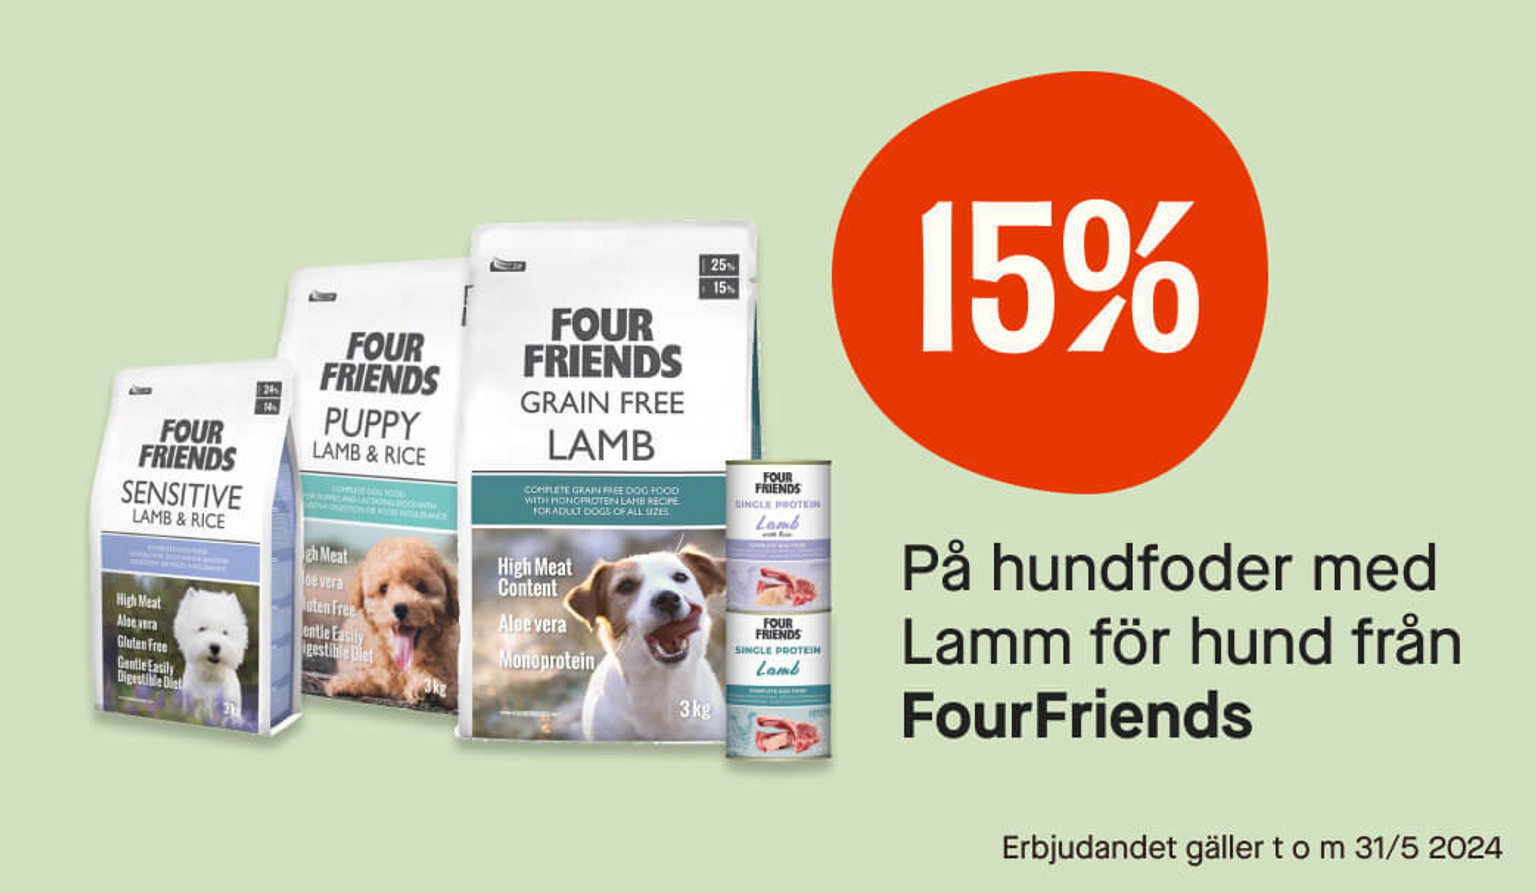 15% hundfoder med lamm